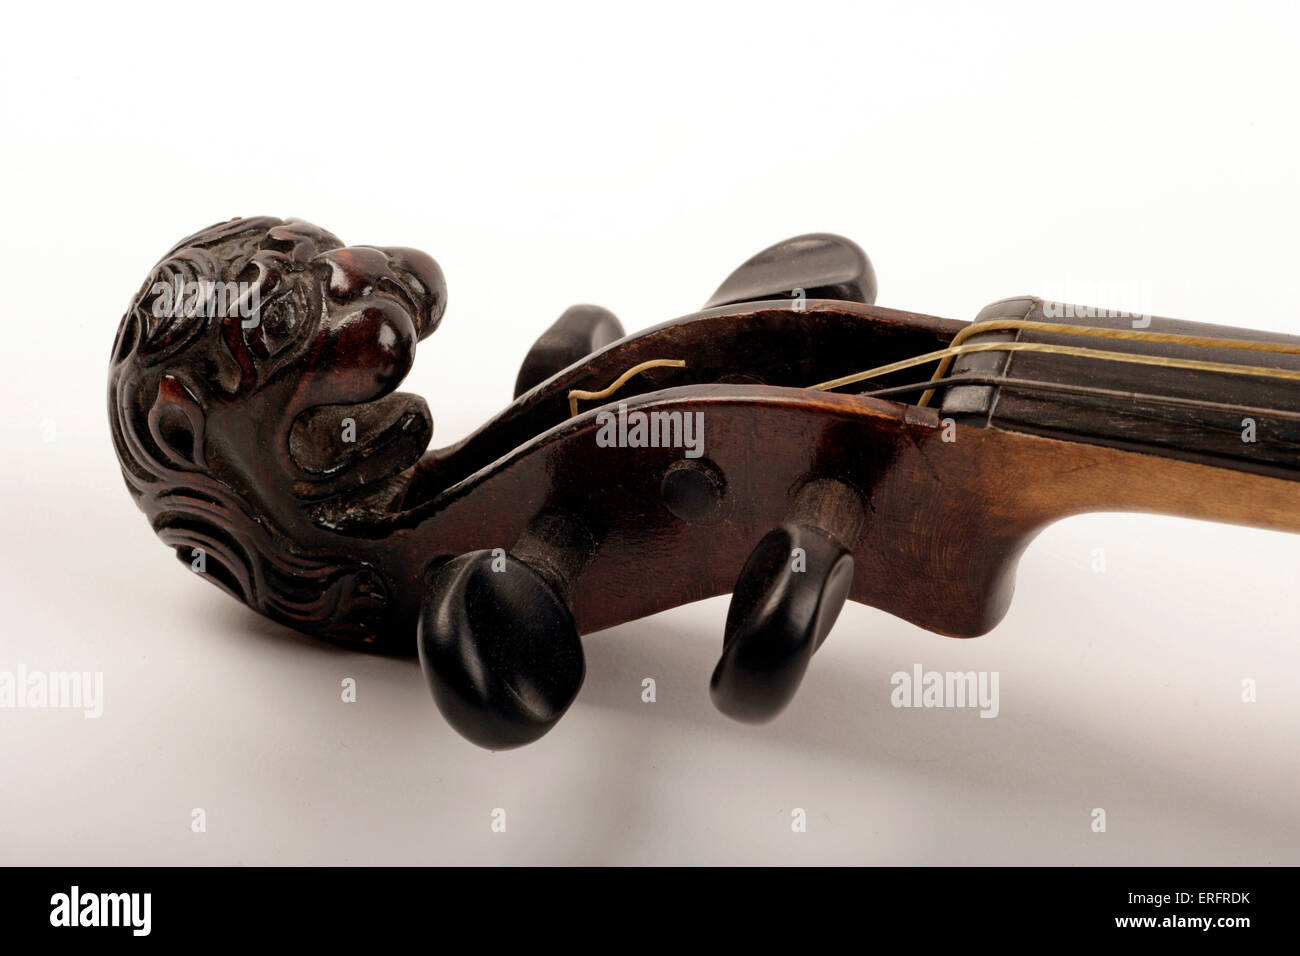 Défiler - violon sculptée en forme de tête d'un lions, avec cordes en boyau. Instrument allemand Banque D'Images